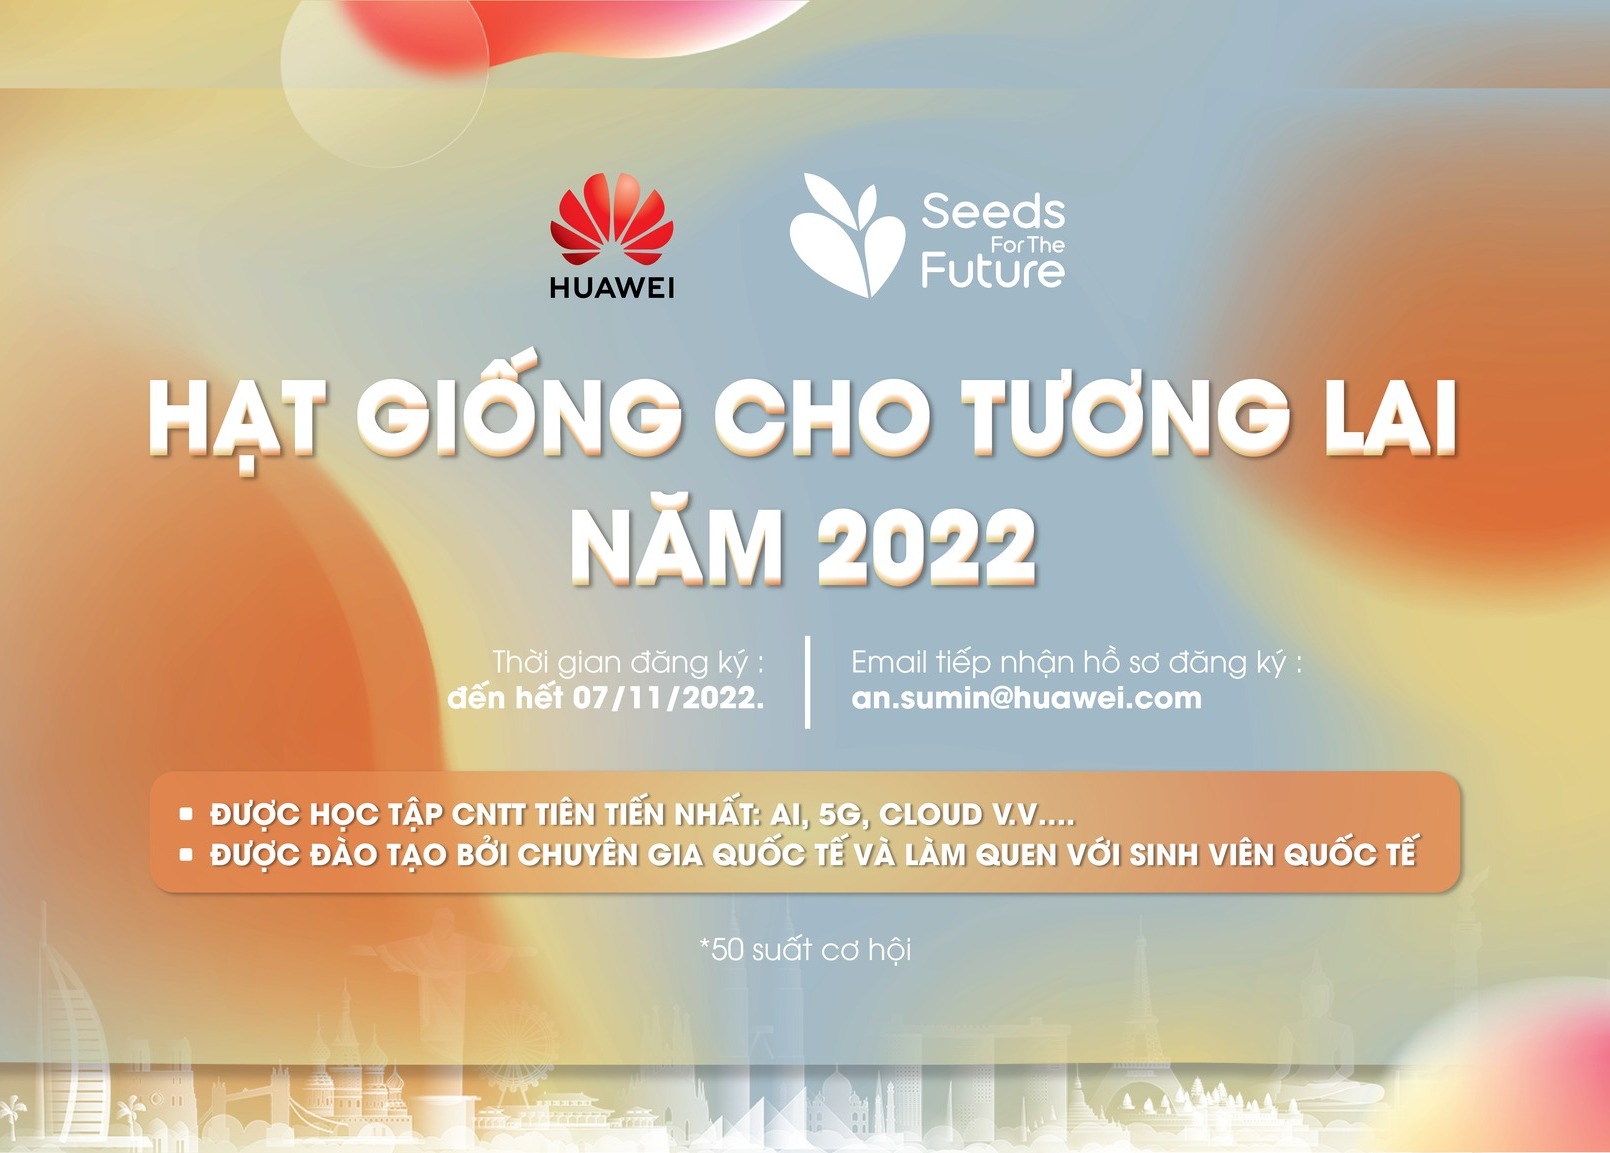 Huawei khởi động "Hạt giống cho Tương lai - Seeds for the Future 2022"